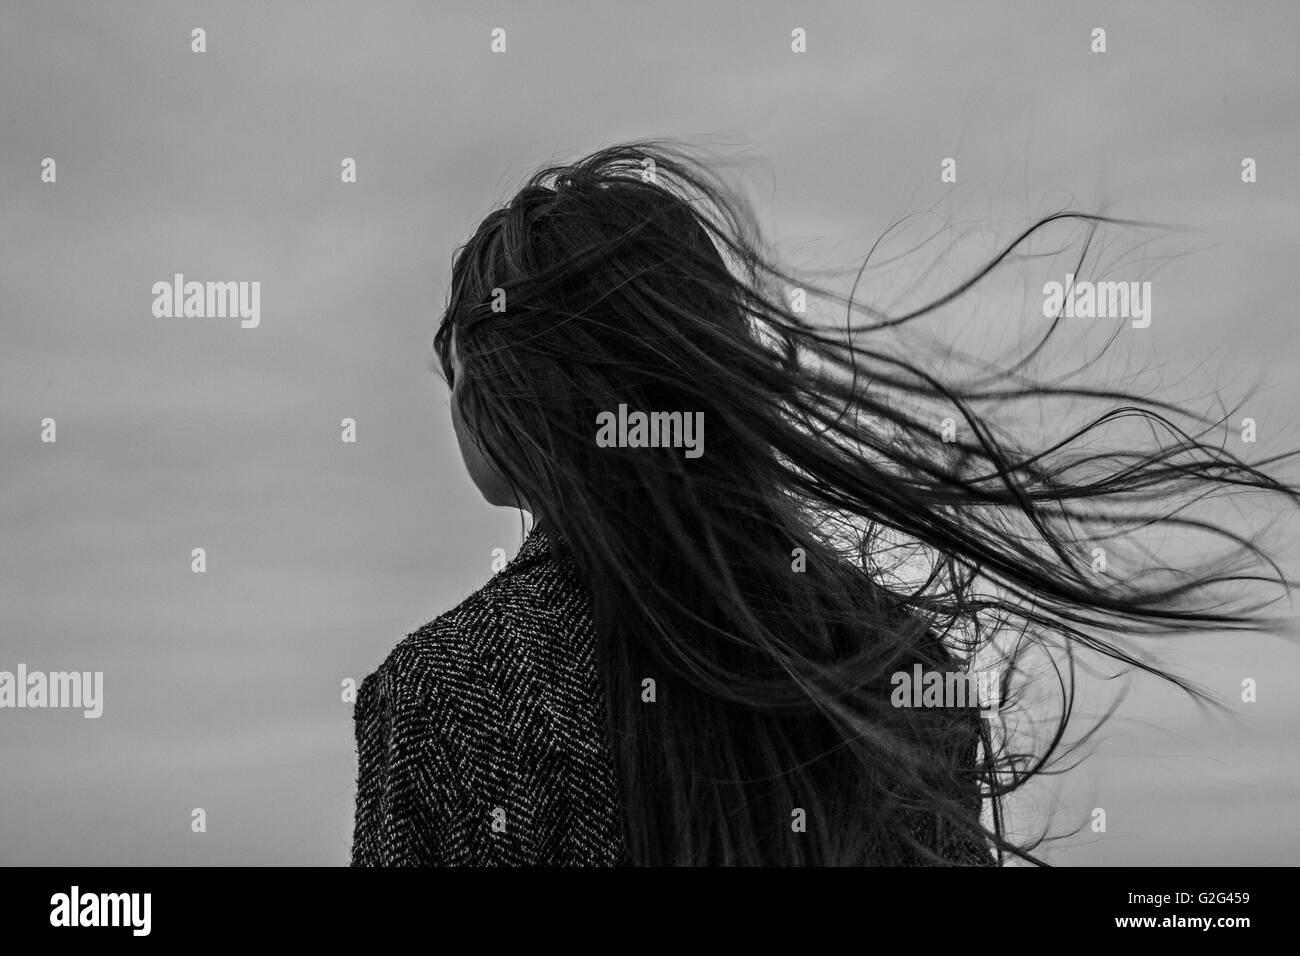 Jeune femme avec les cheveux au vent sur Jour gris, vue arrière Banque D'Images